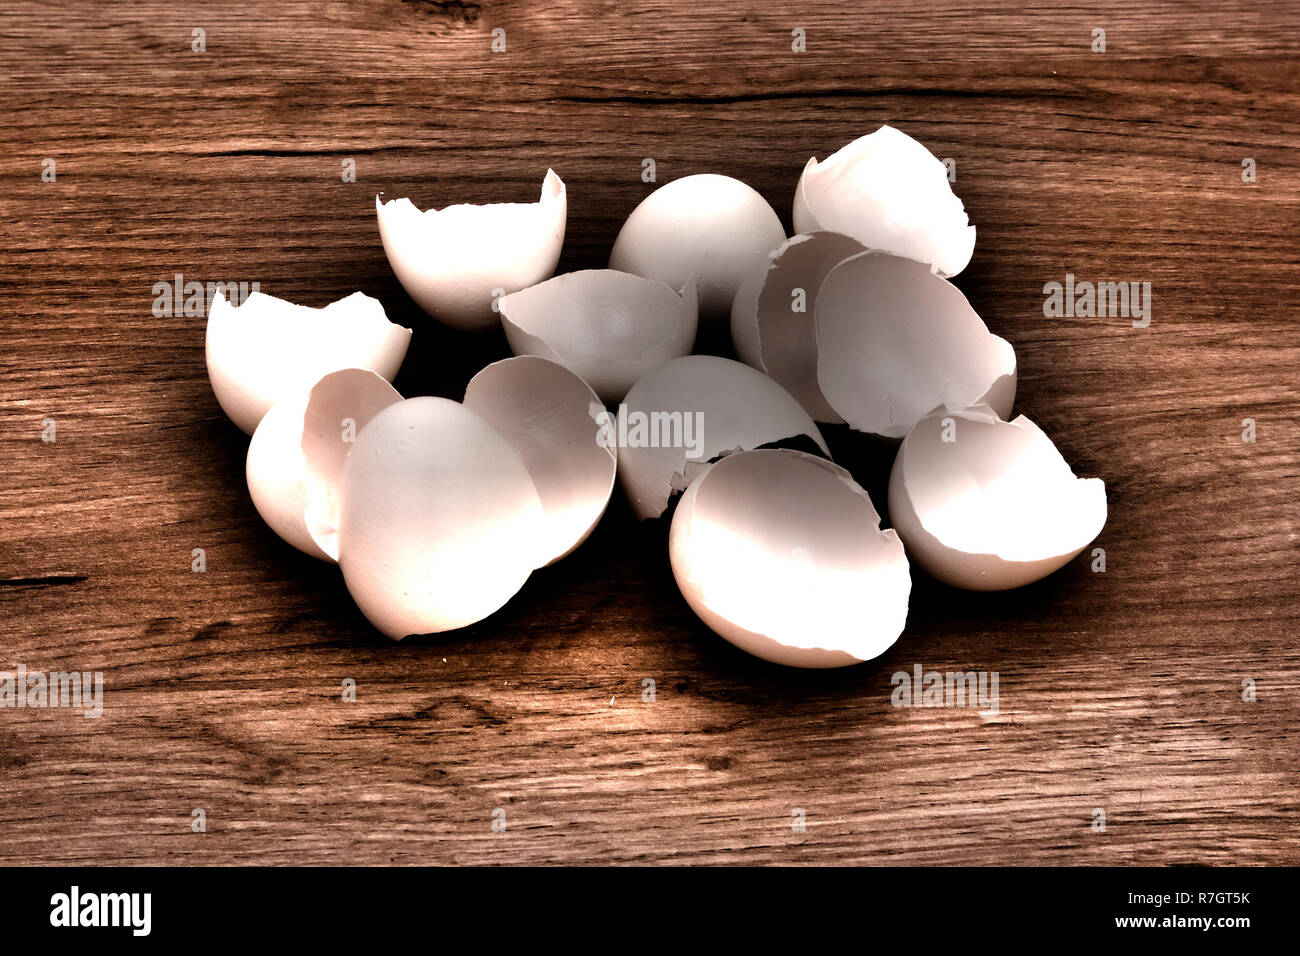 Ein Stapel der leeren weißen Eierschalen liegen auf einem Holzbrett Oberfläche, HDR toning Bild mit Schatten Stockfoto